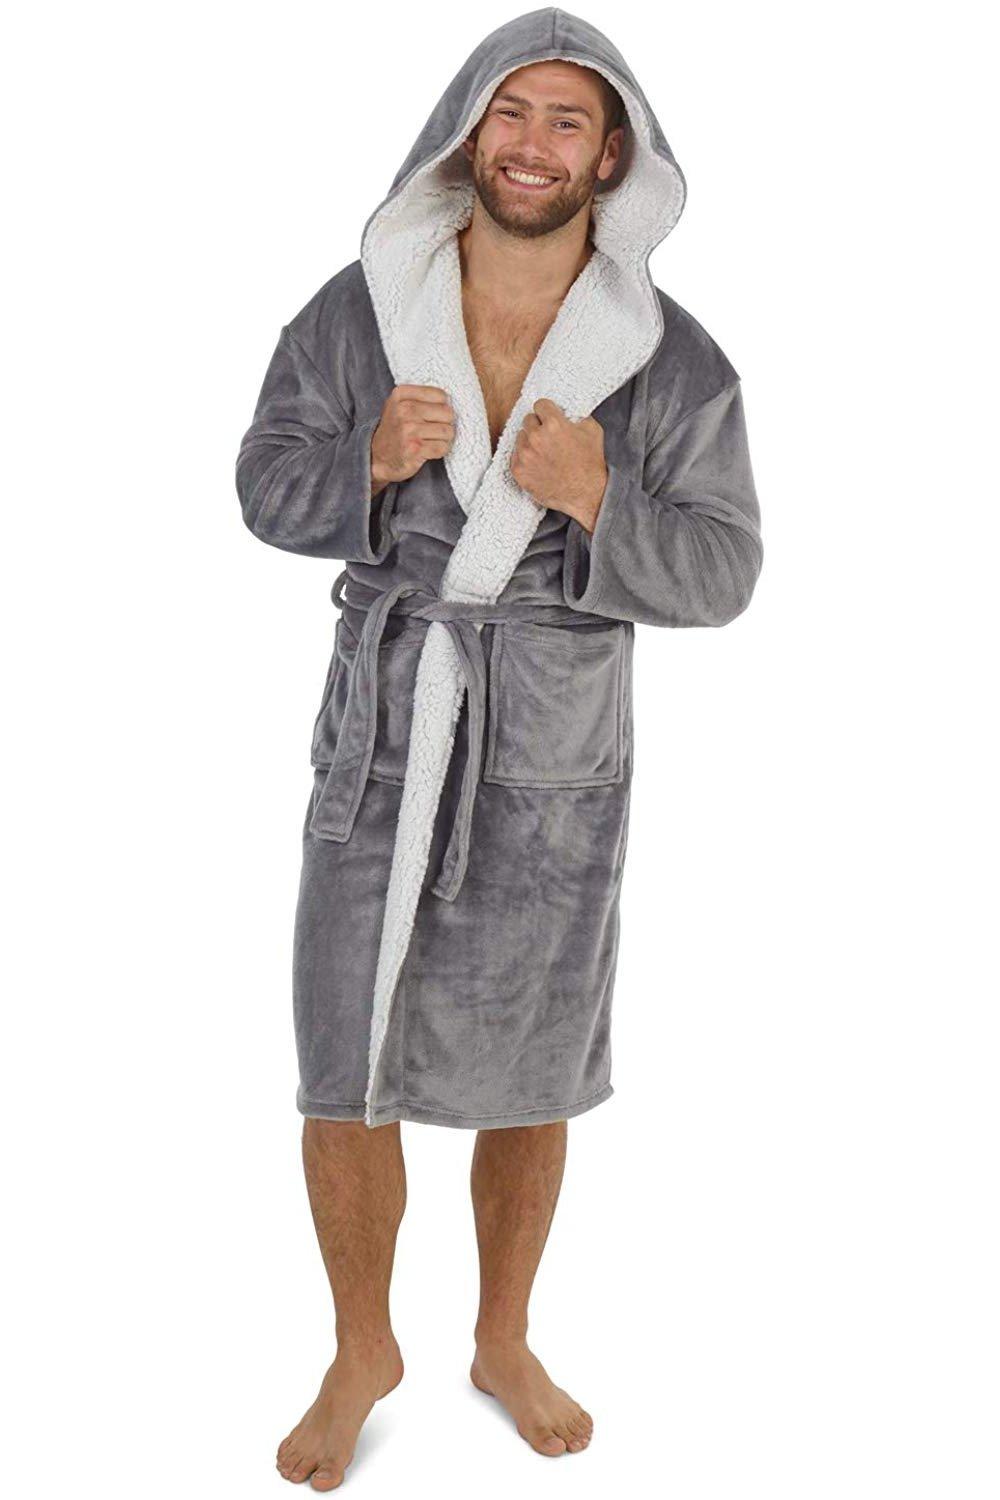 Пышный халат с капюшоном CityComfort, серый мужской халат с капюшоном ночной халат зимний теплый длинный флисовый халат домашняя одежда с поясом